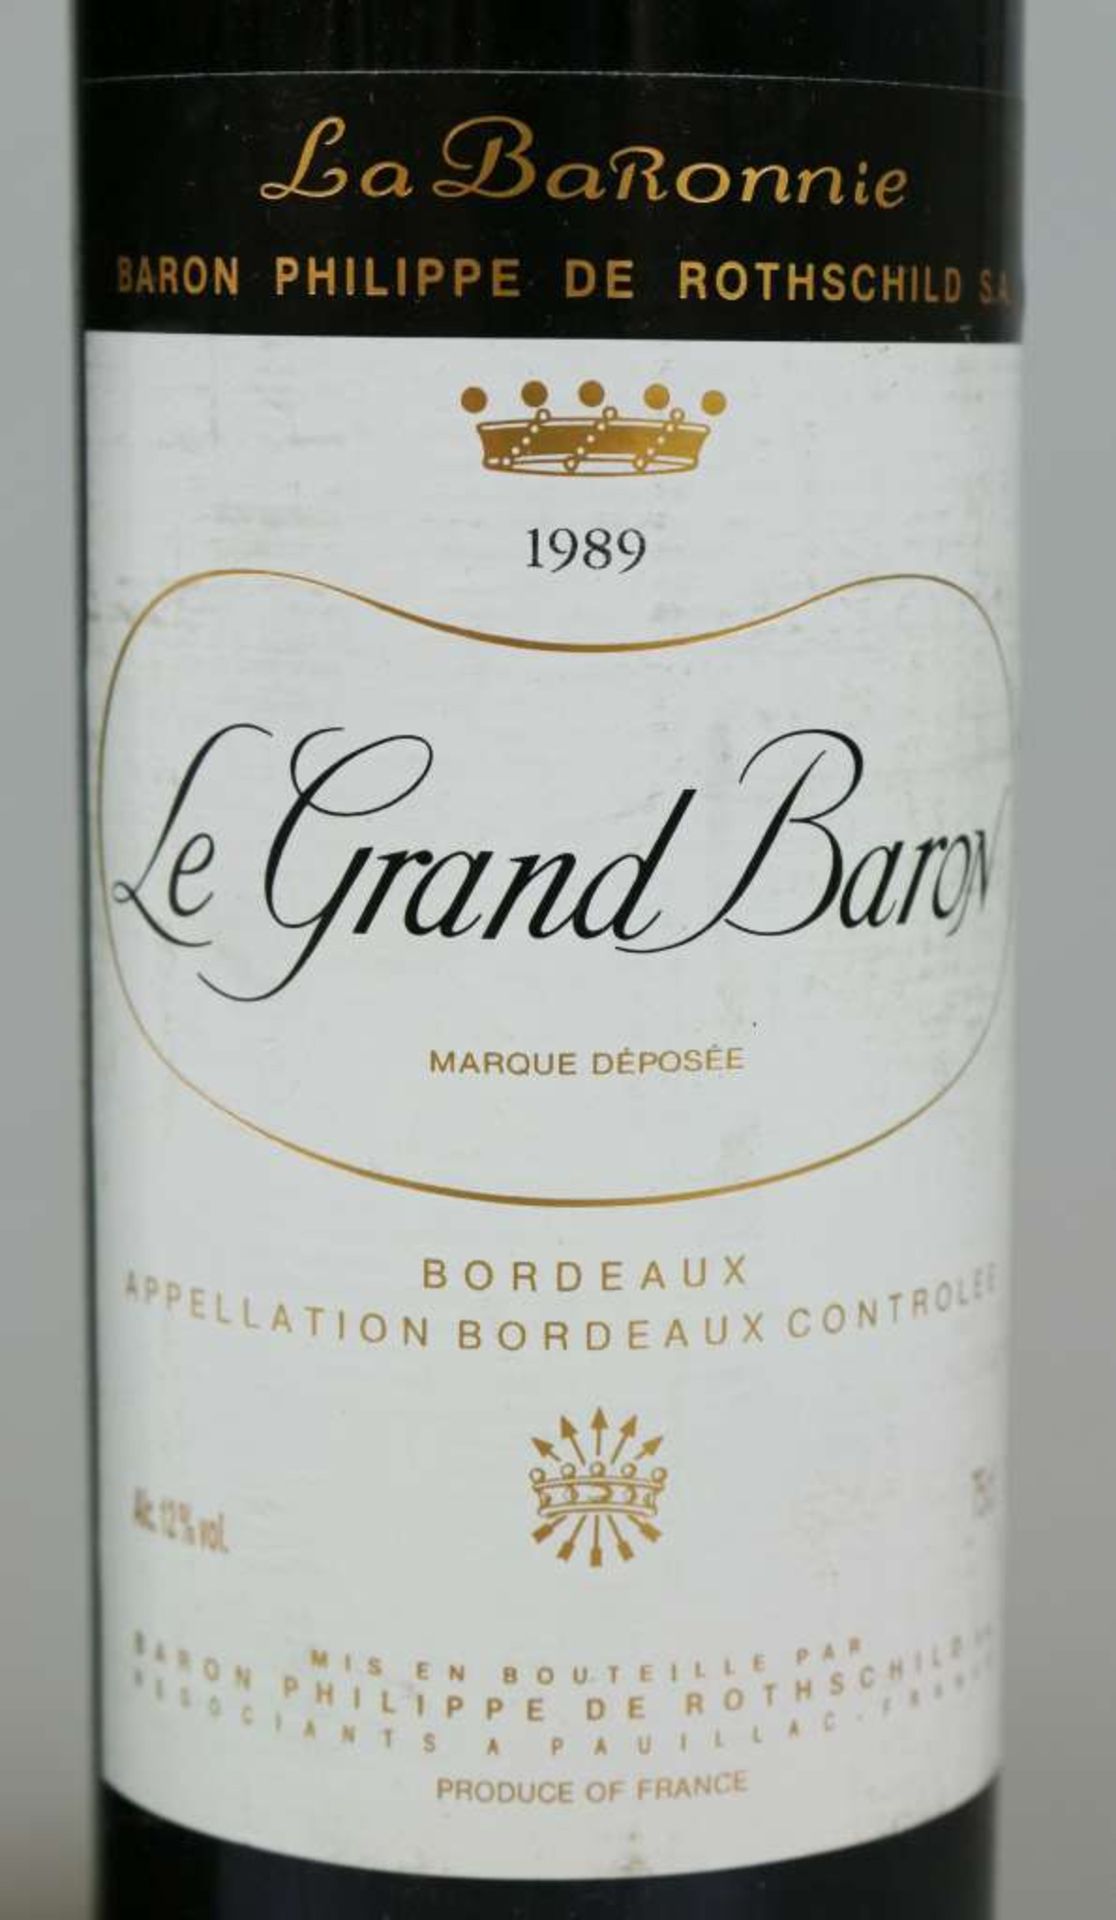 Rotwein, 2 Flaschen La Grand Baron, La BaRonnie, Baron Philippe de Rothschild, 1989, 0,75 L. Top - Bild 2 aus 3